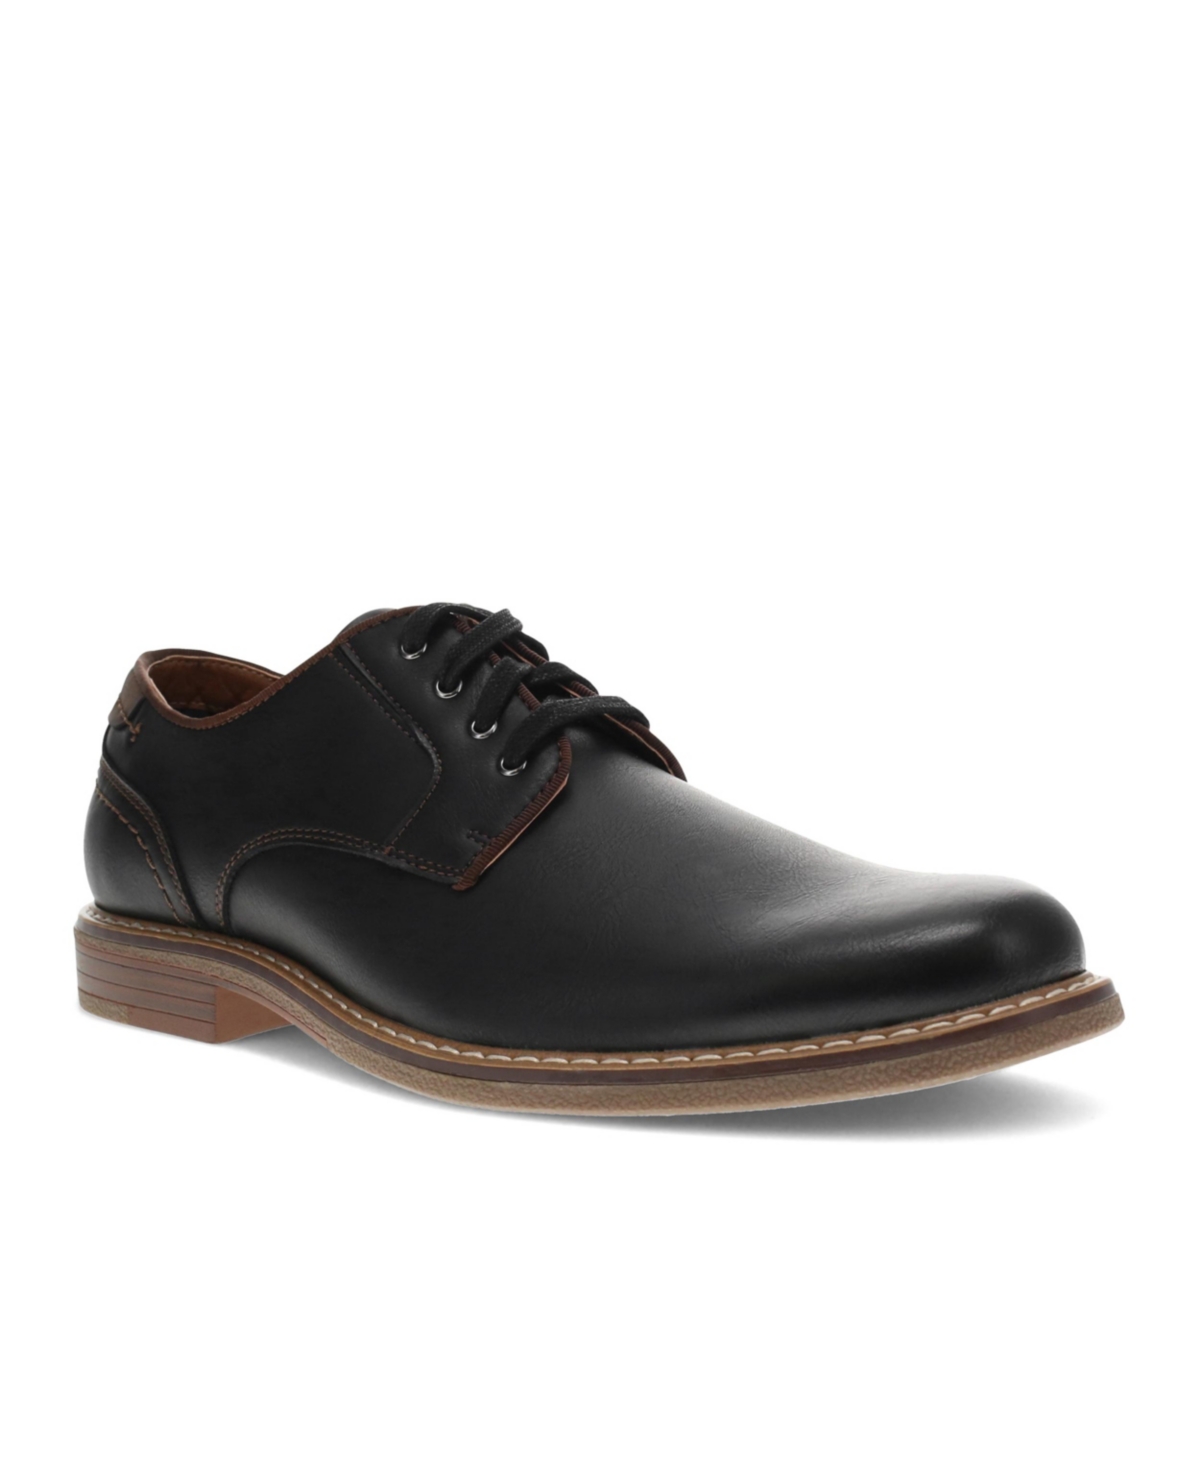 Dockers Men's Bronson Oxford Shoes Men's Shoes